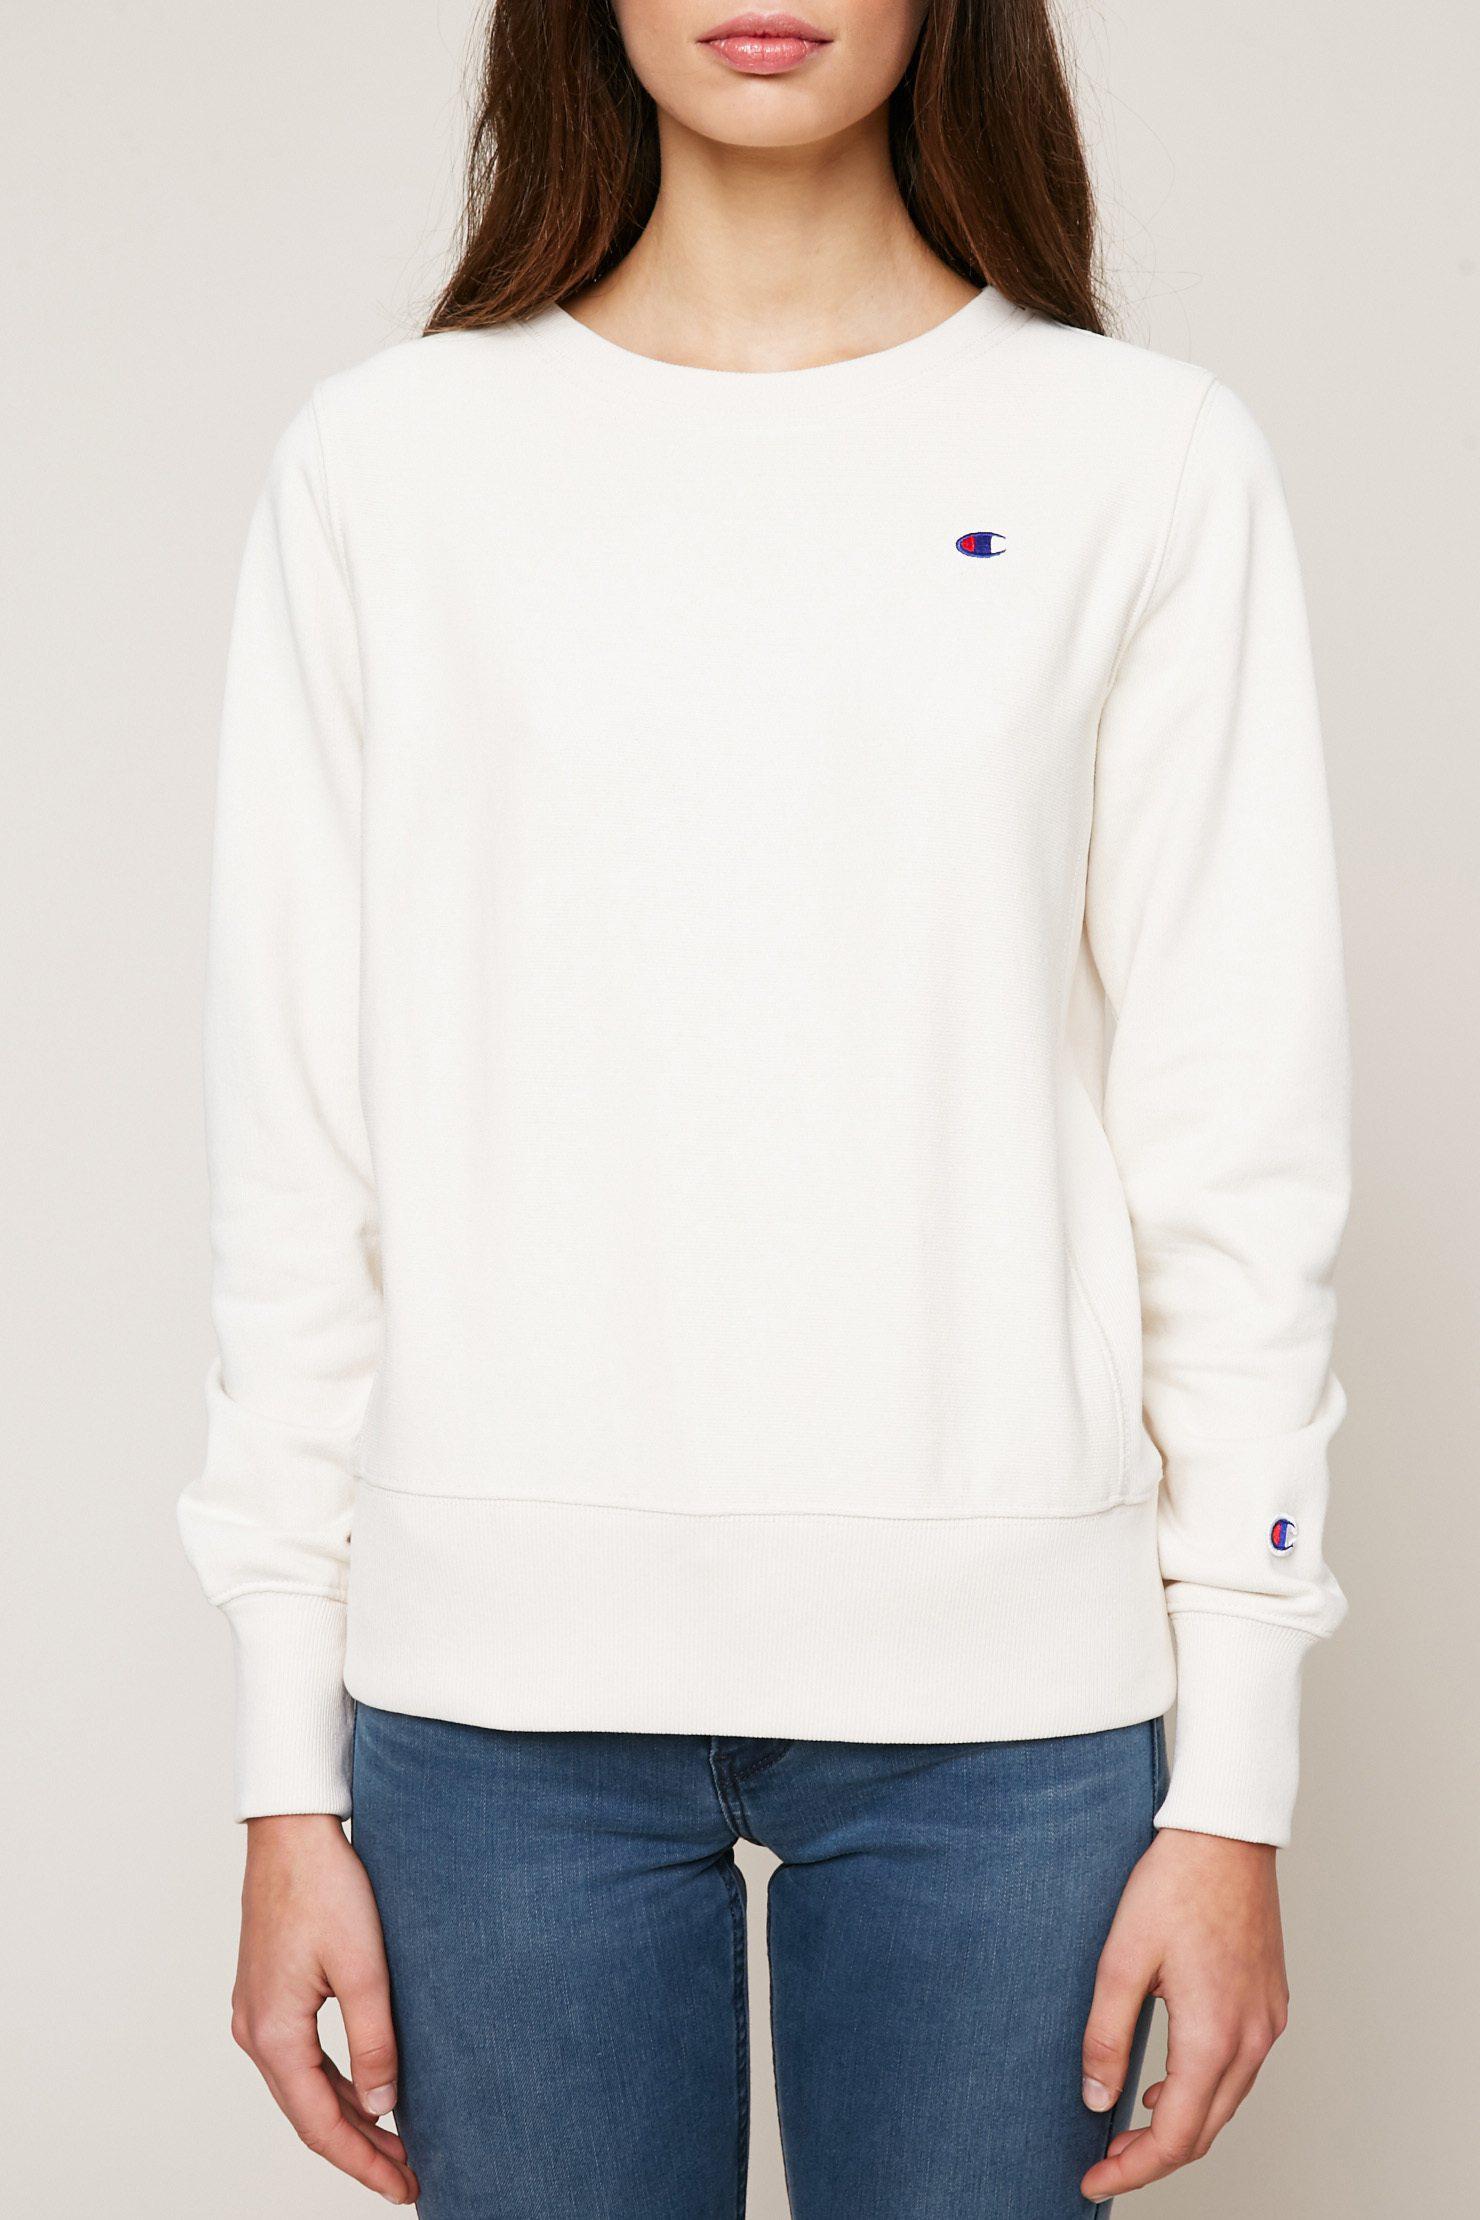 Lyst - Champion Sweatshirt in White